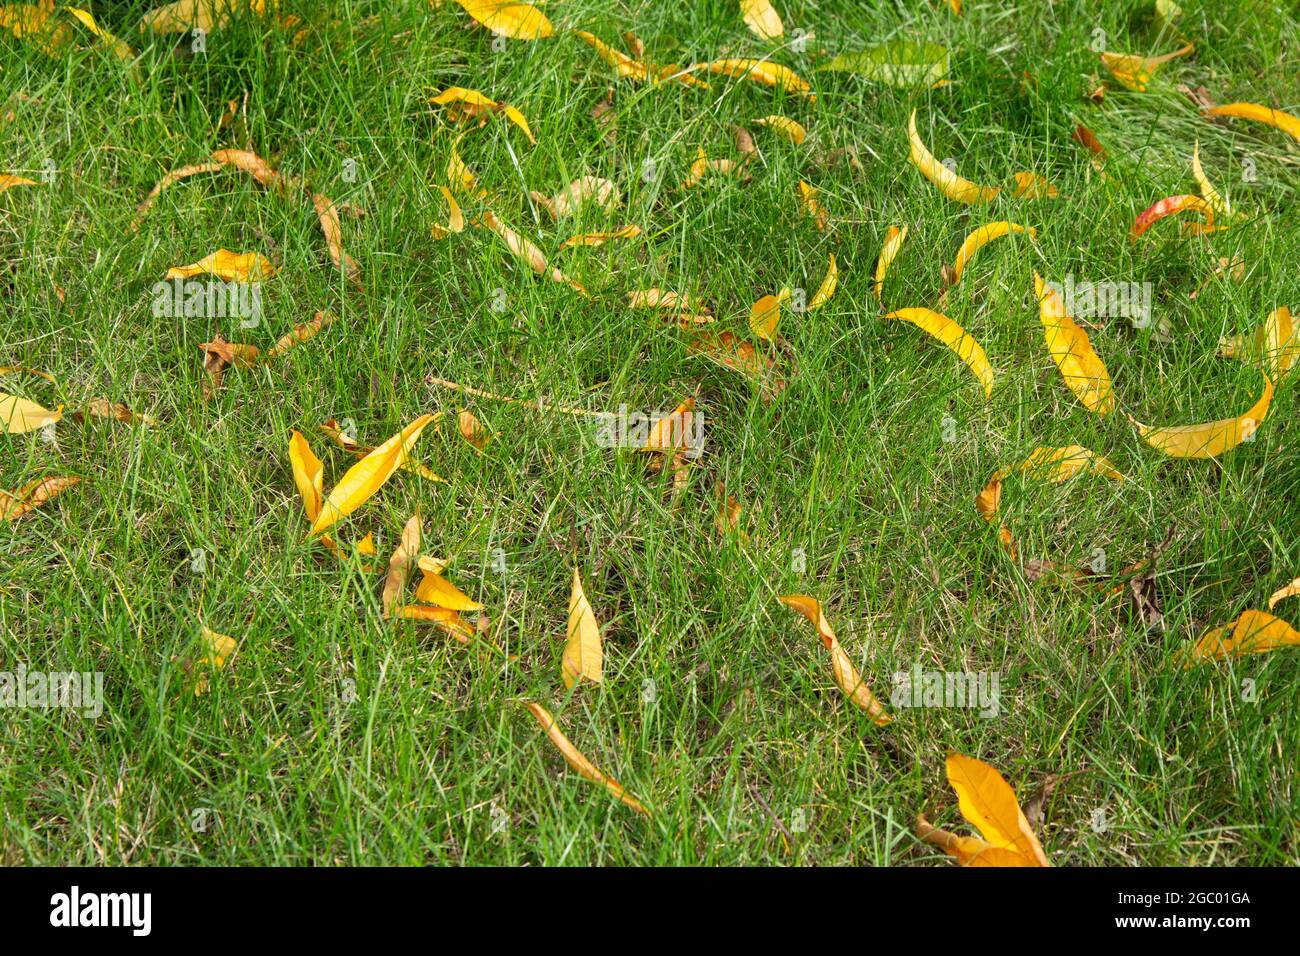 Nektaringelbe Blätter fallen herunter. Obstgarten in der Herbstsaison. Stockfoto